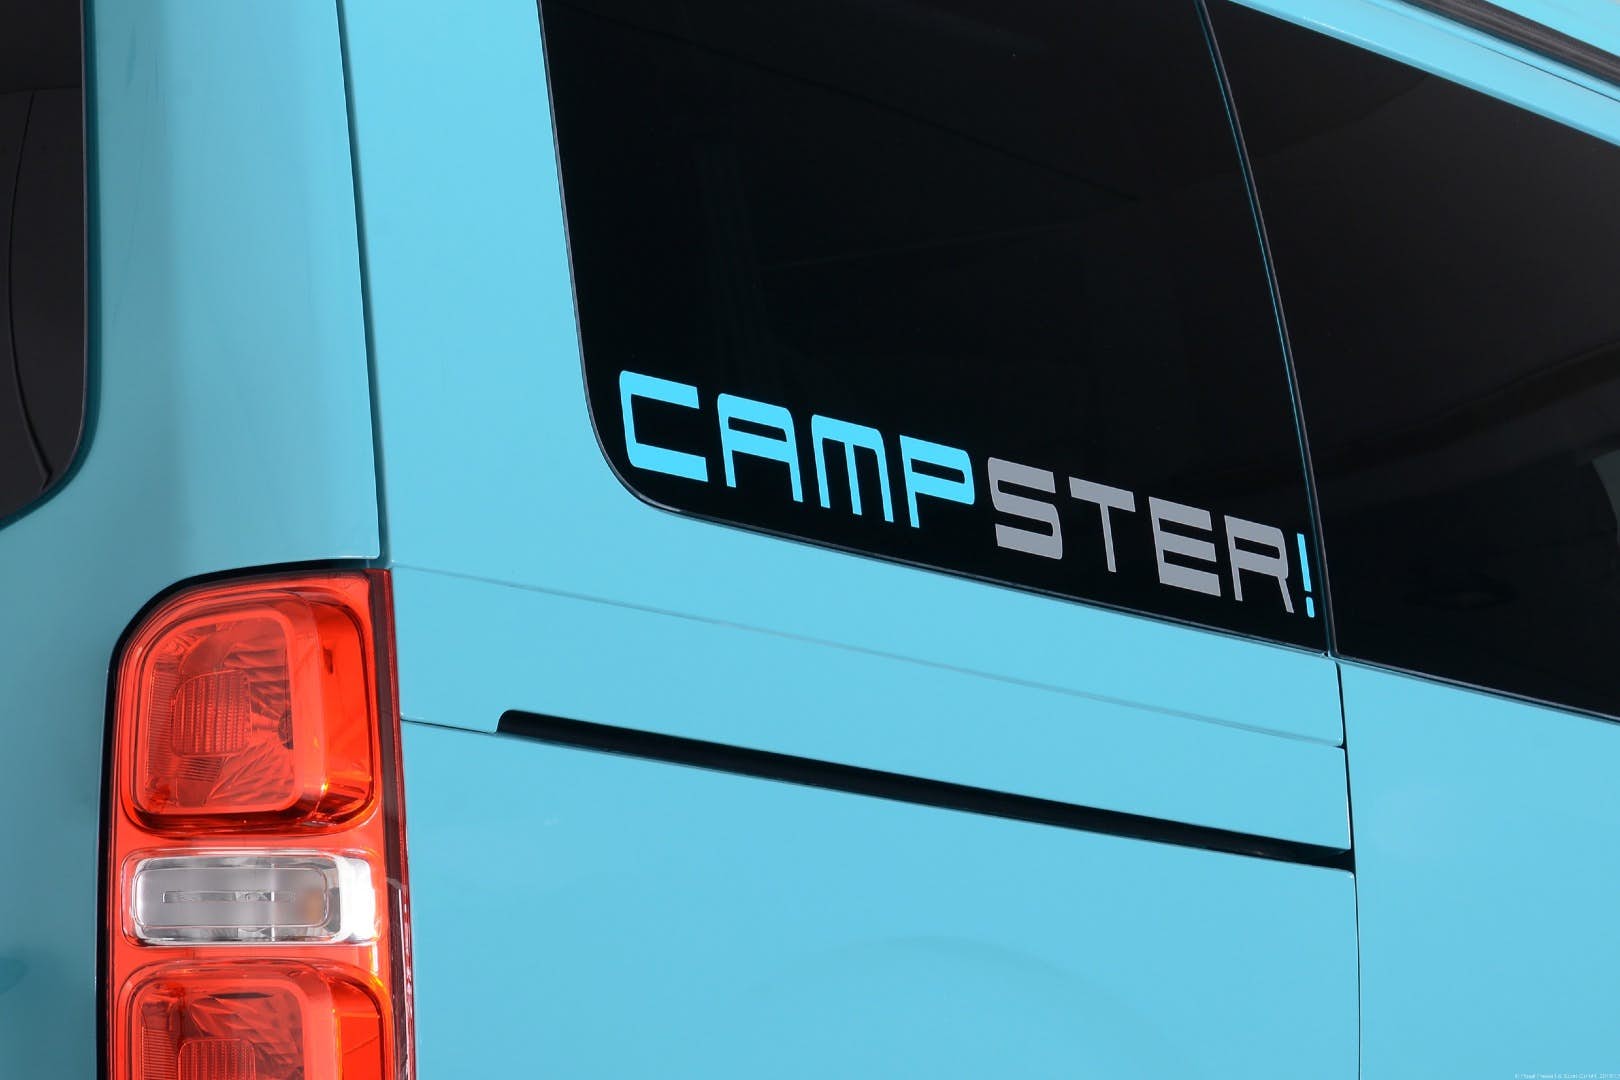 compact camper - campsite logo